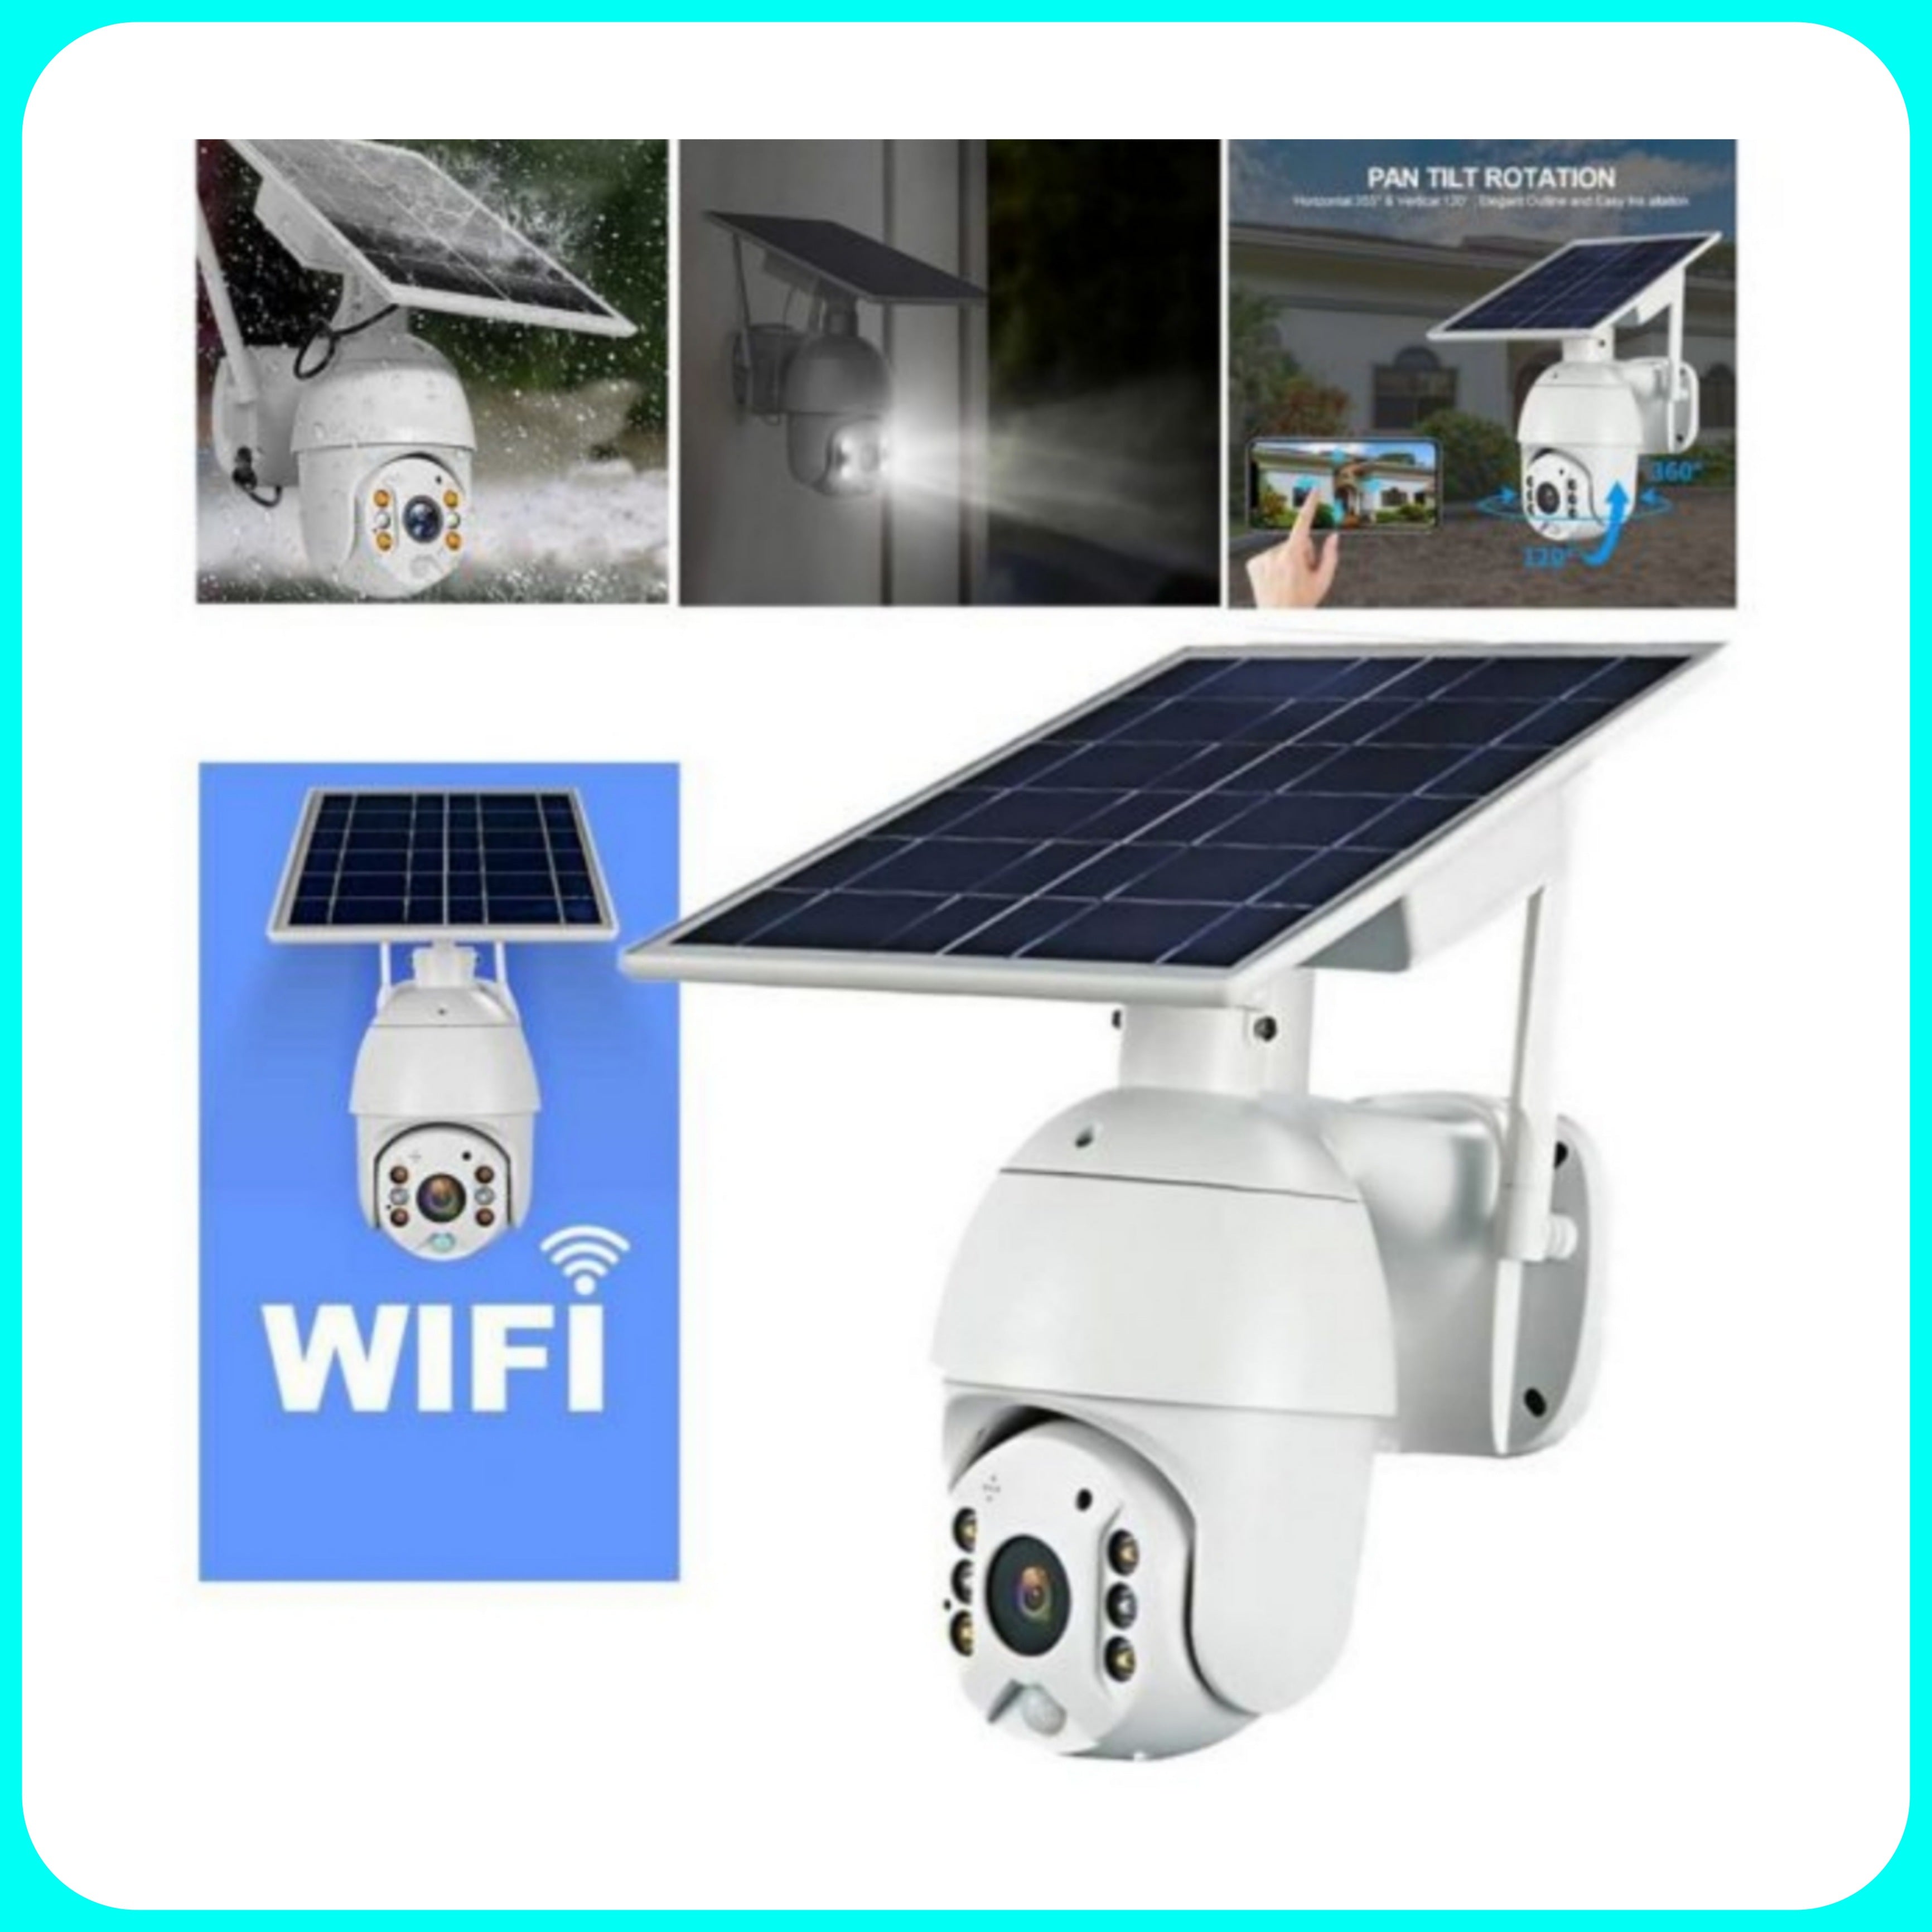 Caméra de sécurité - Caméra IP sans fil à panneau solaire PTZ extérieur Caméra panoramique / titre WiFi 1080P avec vision nocturne 